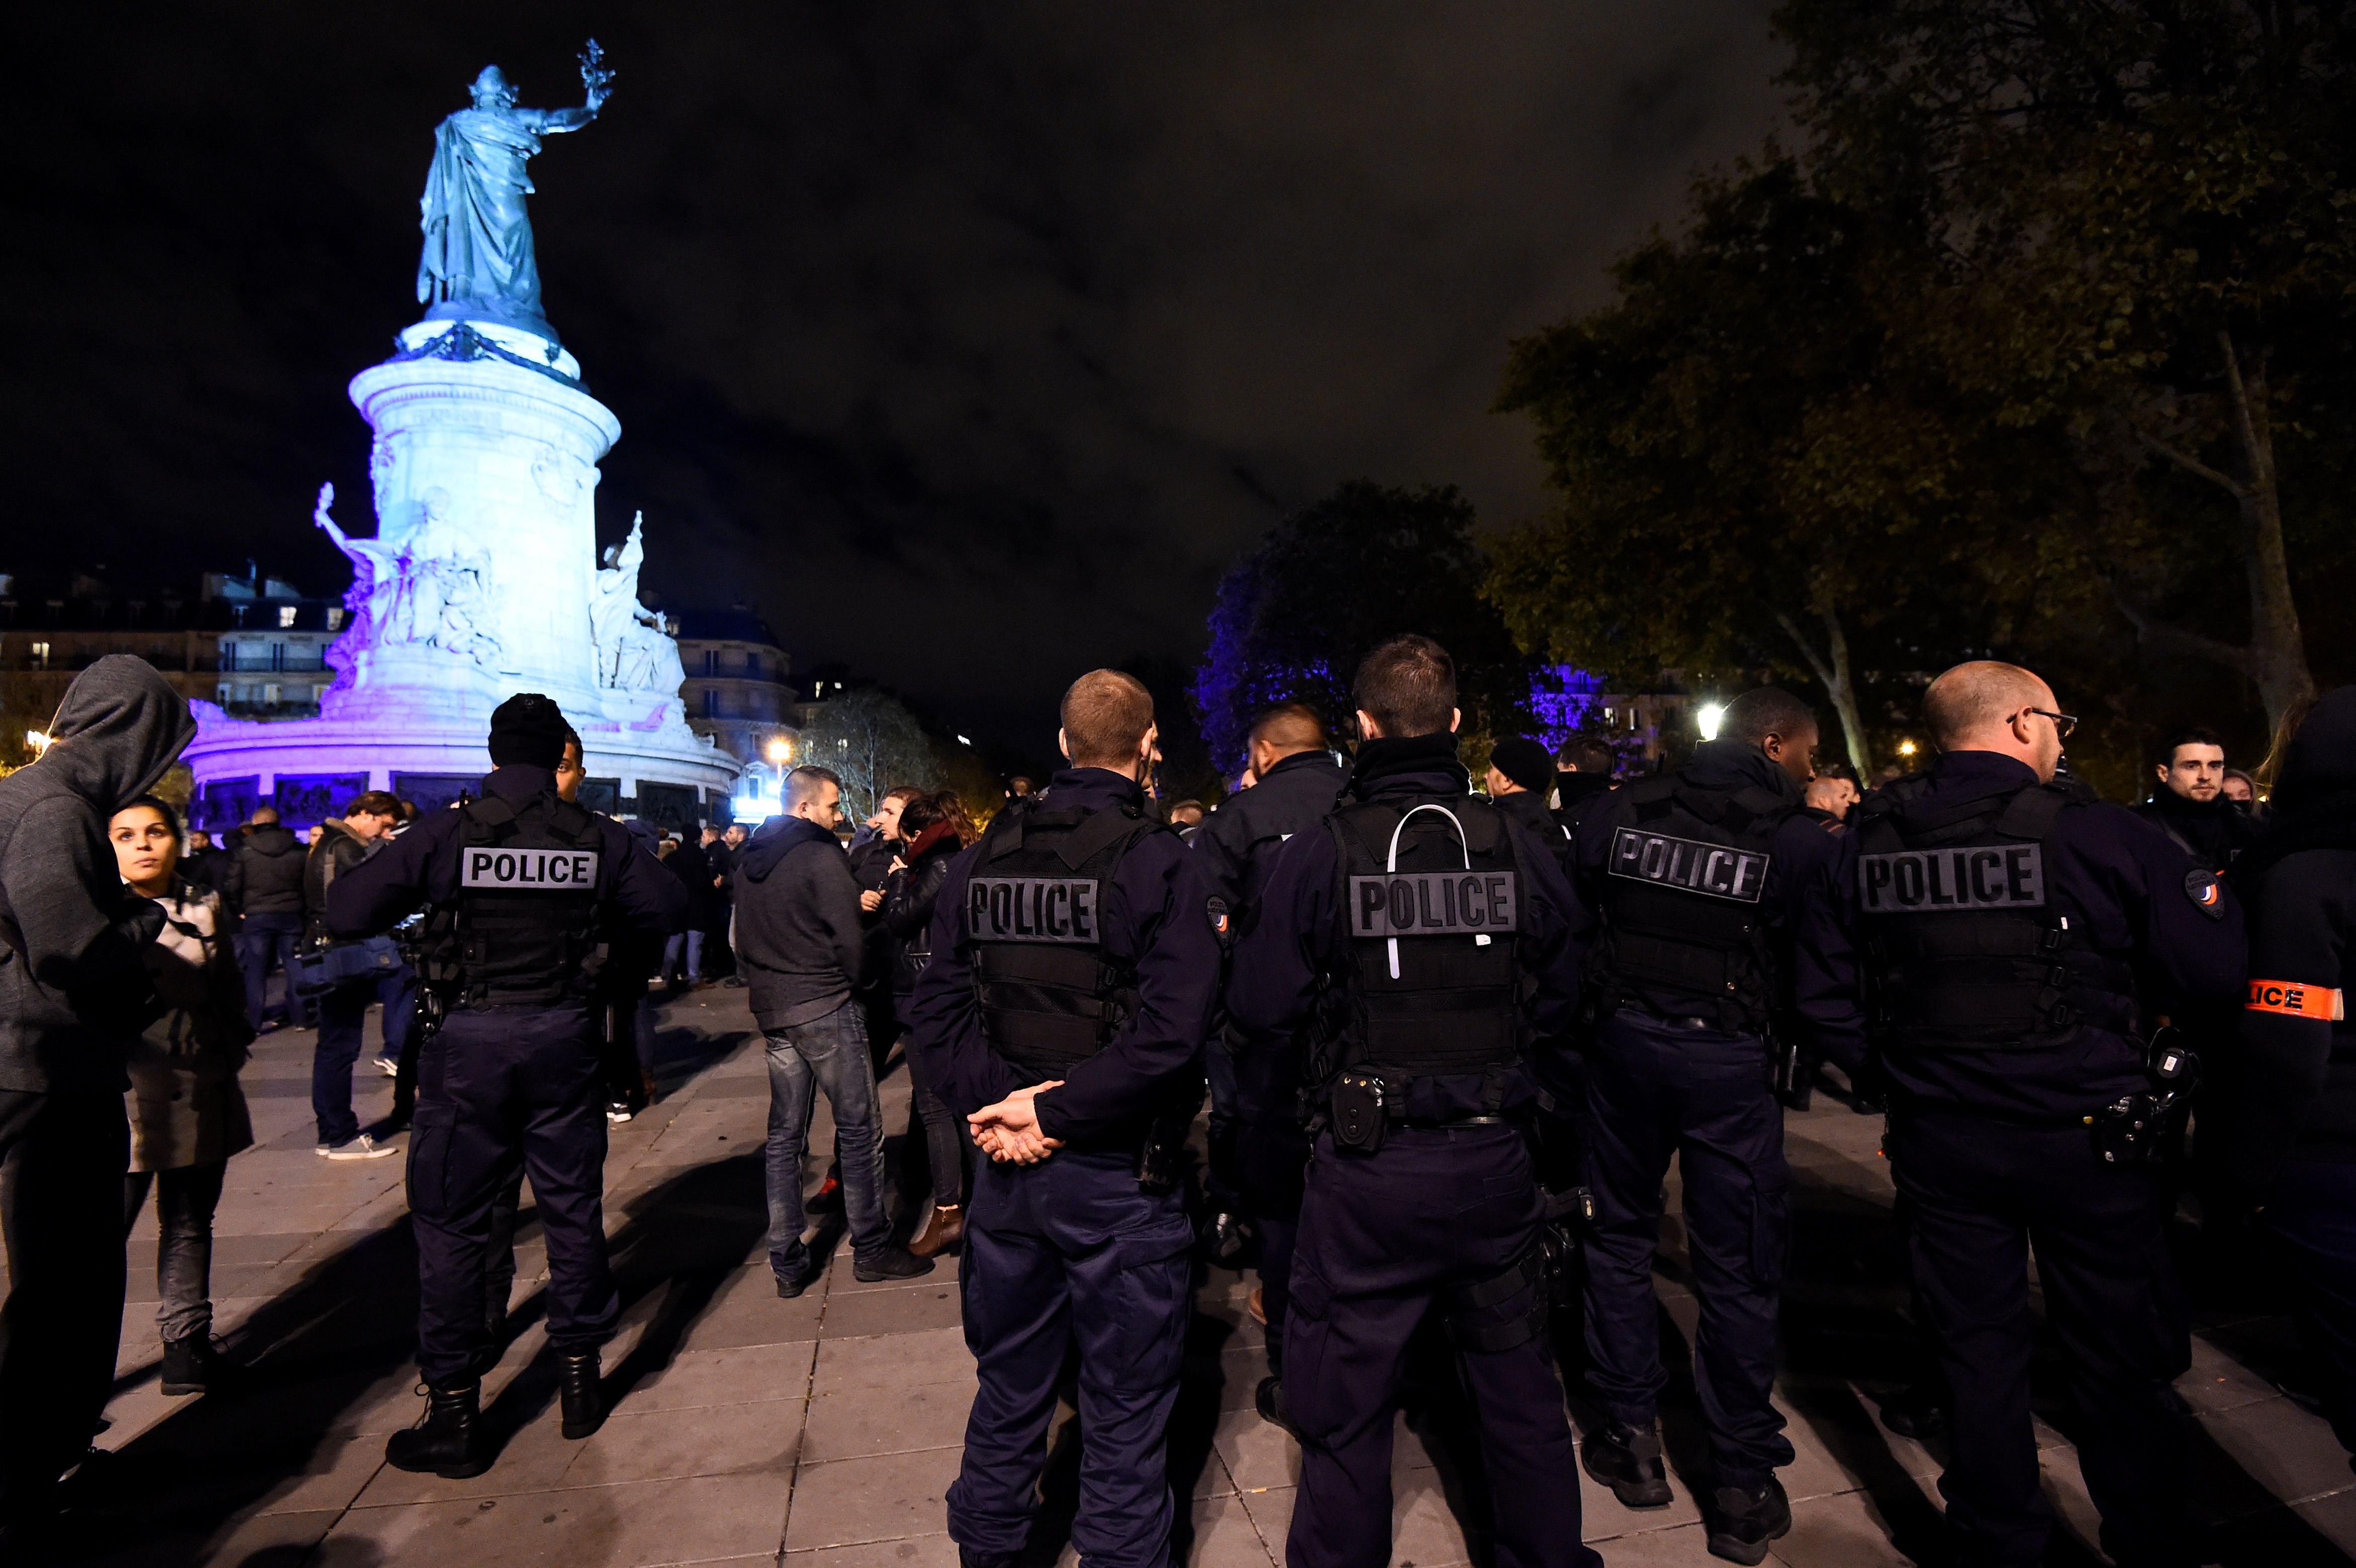 Polizei-Proteste in Frankreich halten an – Neue Angriffe gestern in Lyon